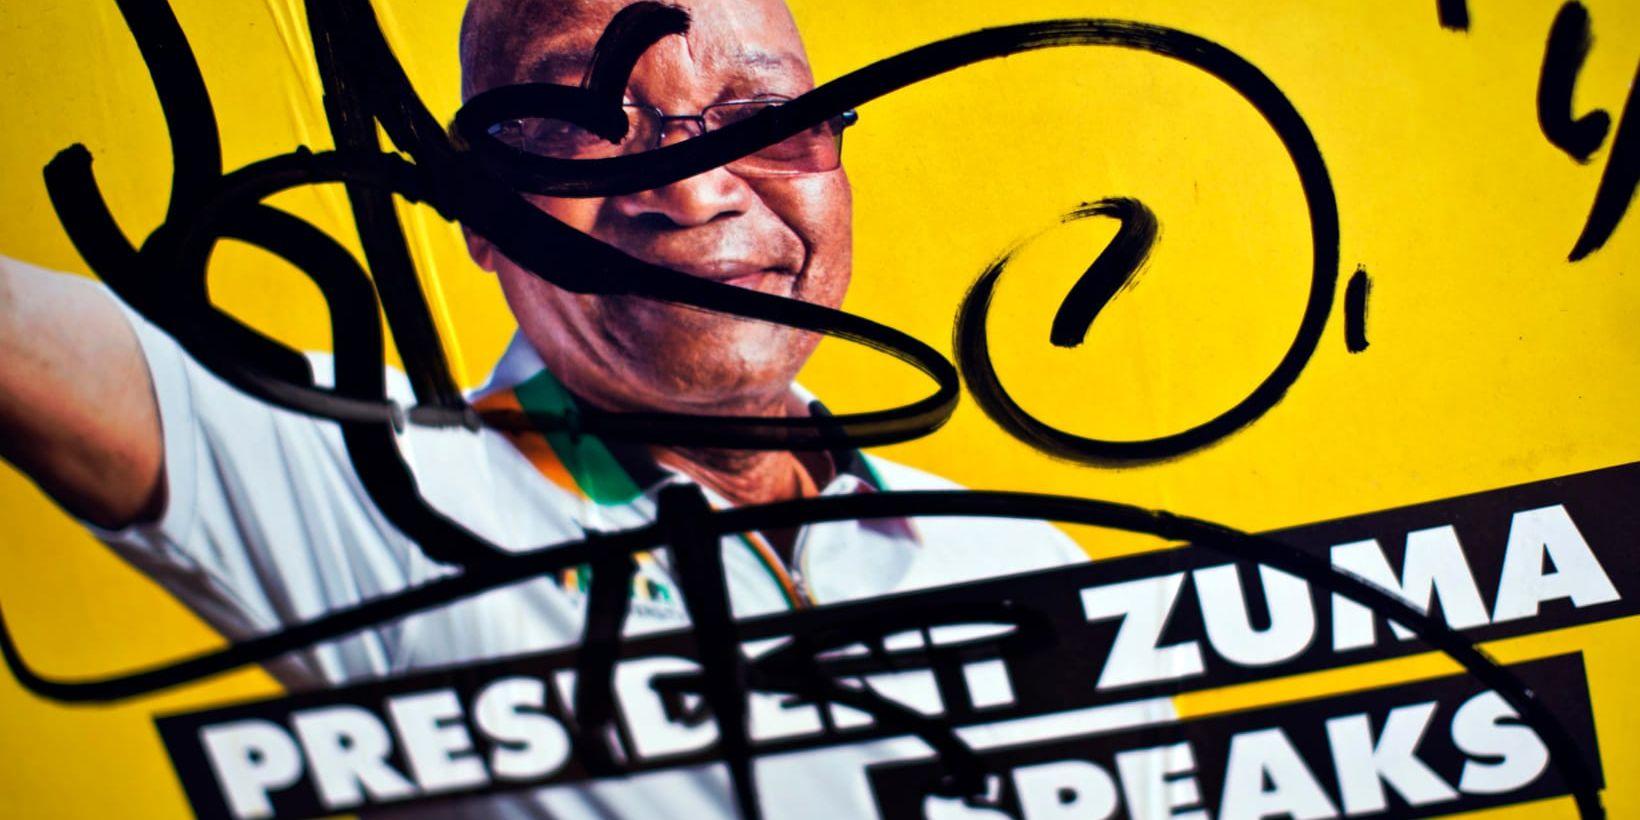 En valaffisch med president Jacob Zuma överklottrad. Arkivbild.